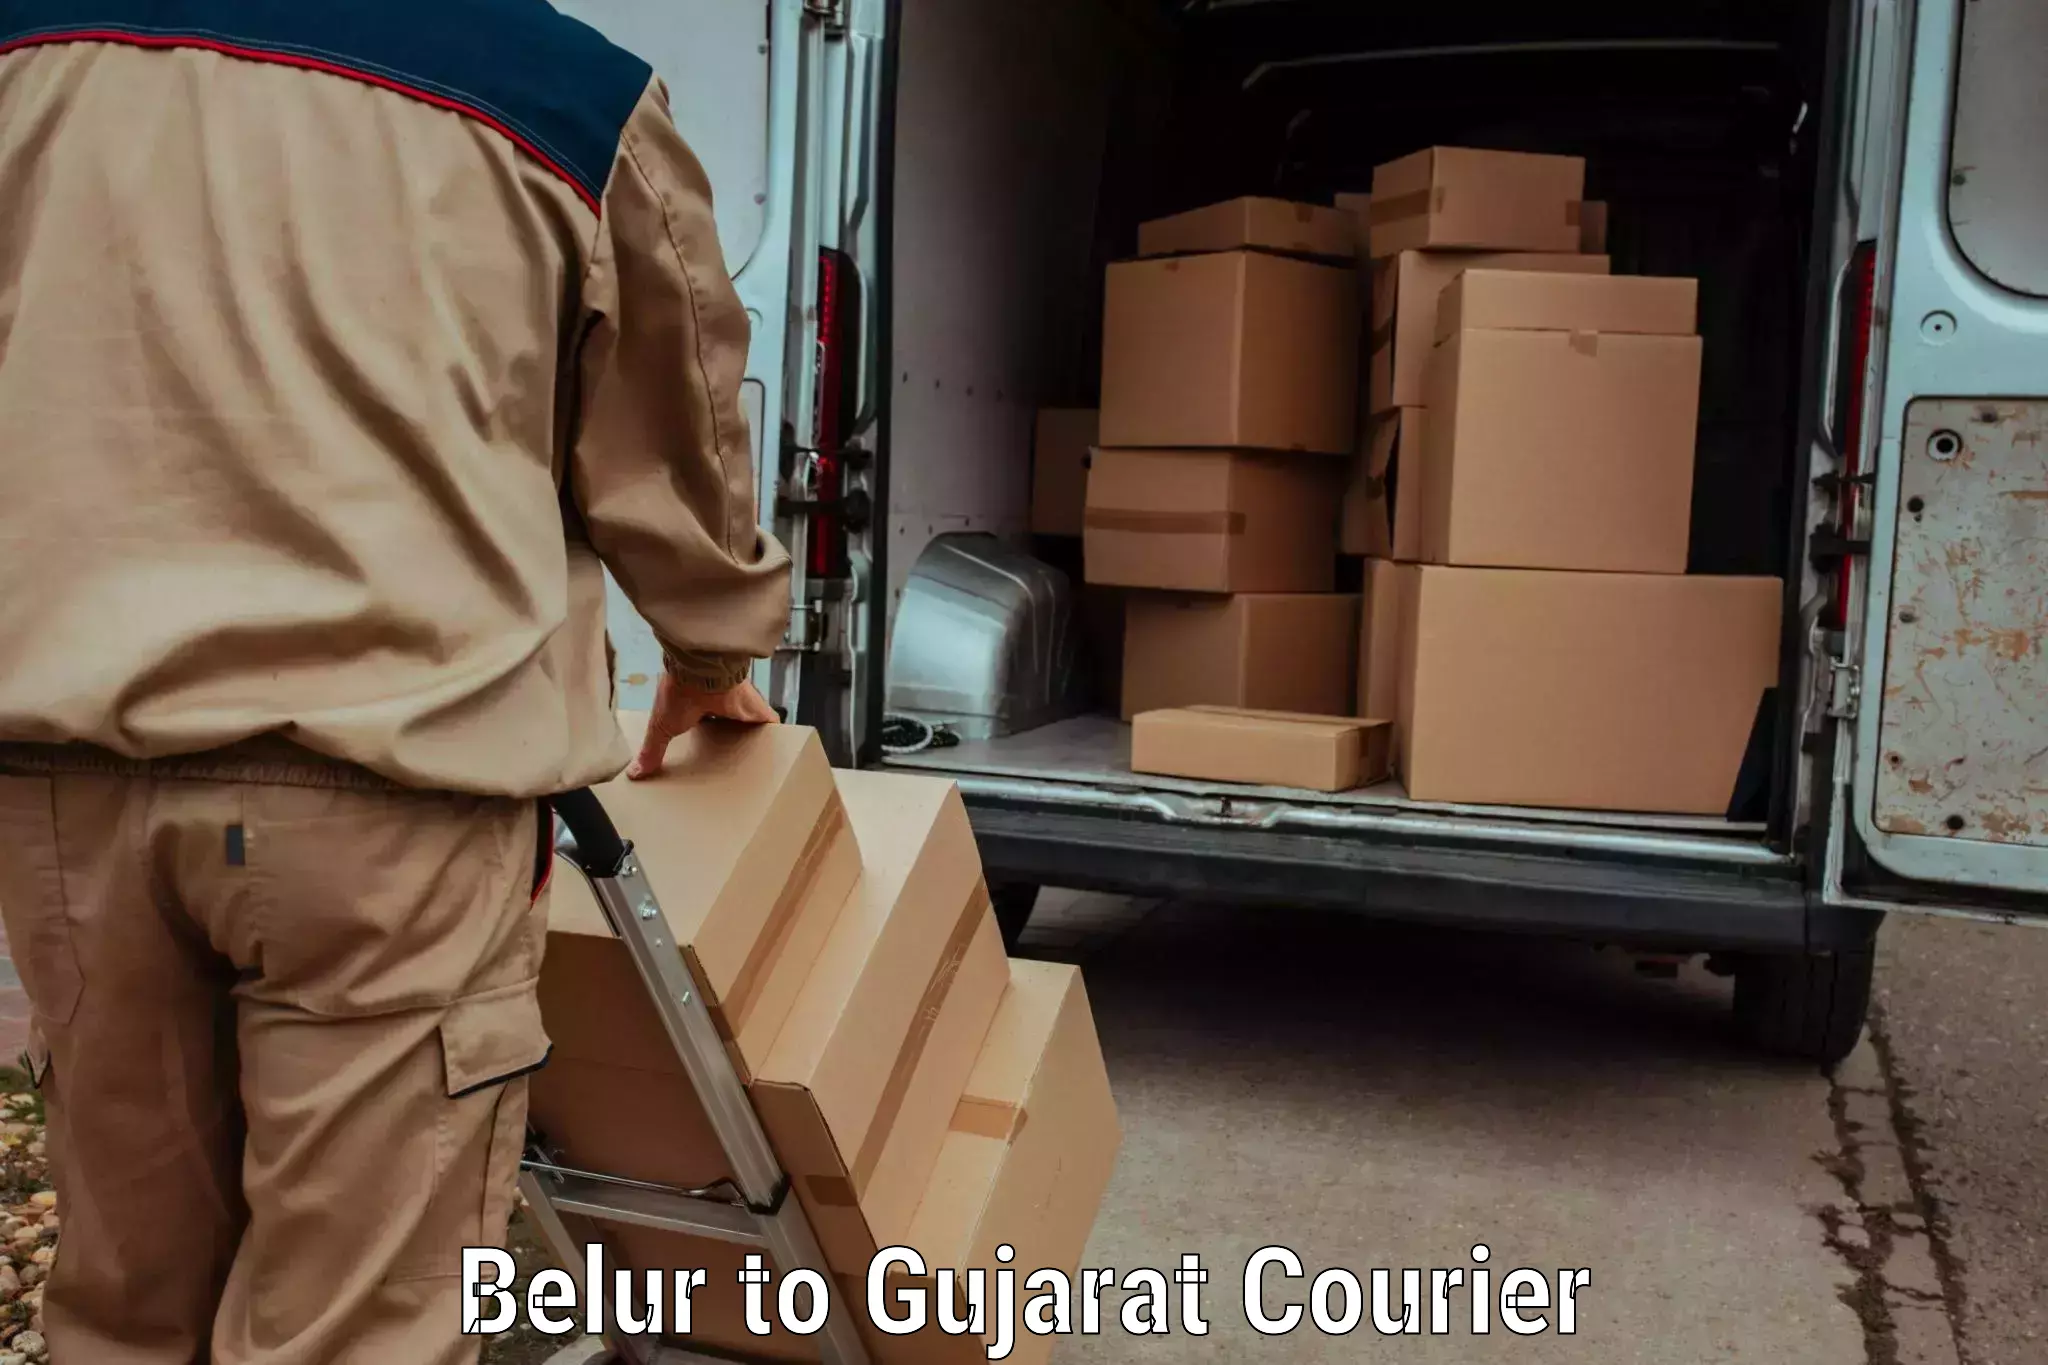 User-friendly delivery service Belur to Valsad